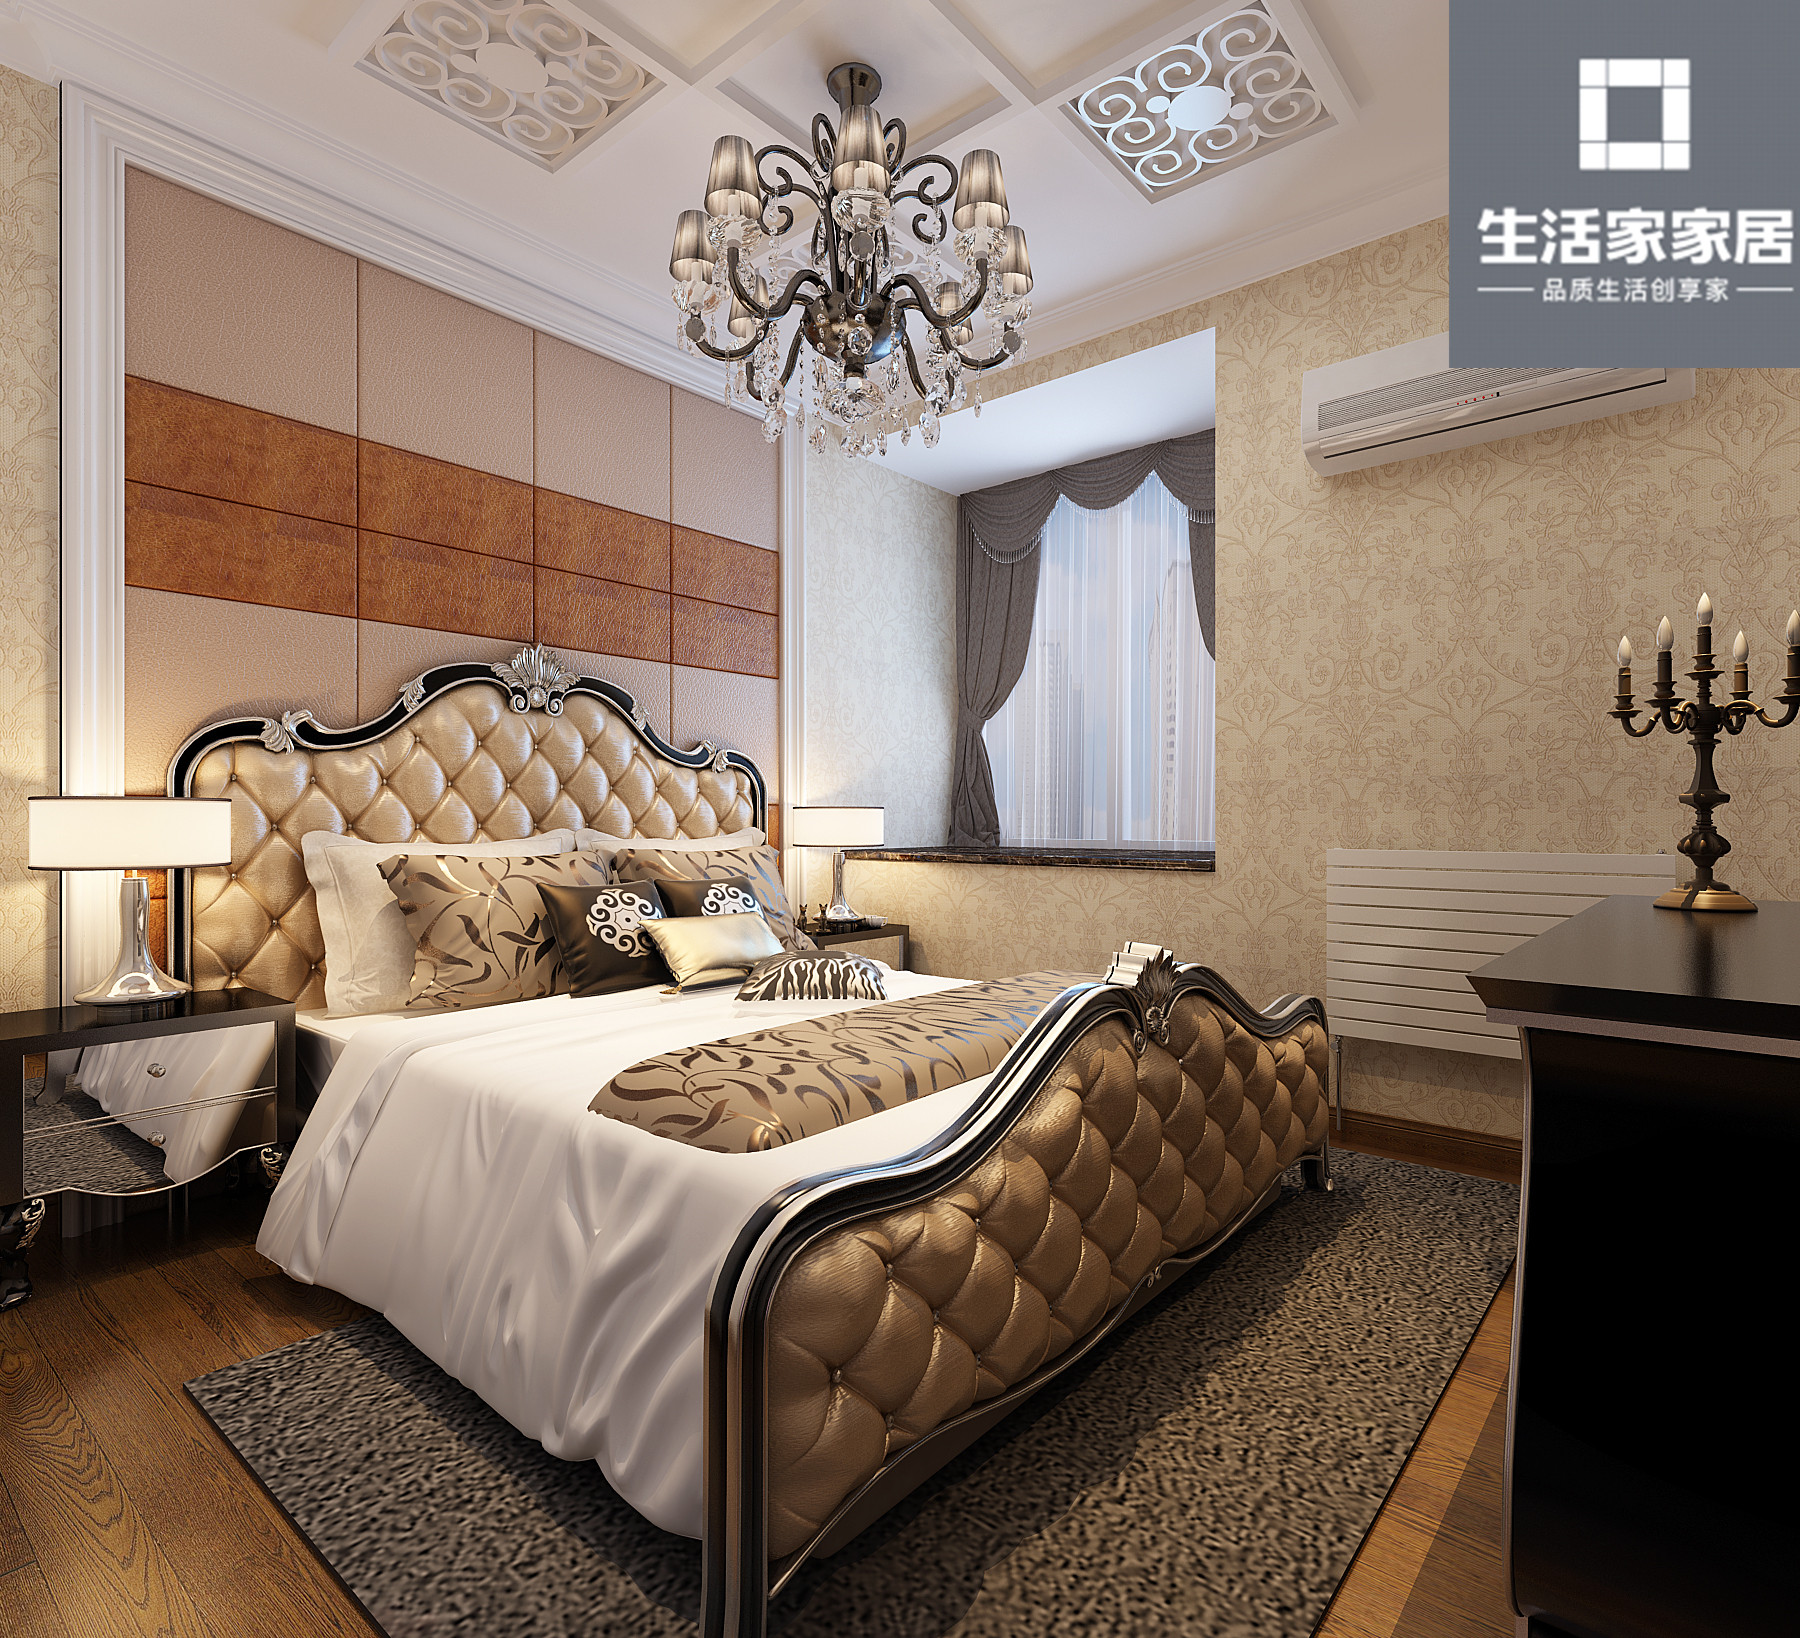 二居 简欧 三口之家 卧室图片来自武汉生活家在观澜国际78平两室两厅简欧风格的分享